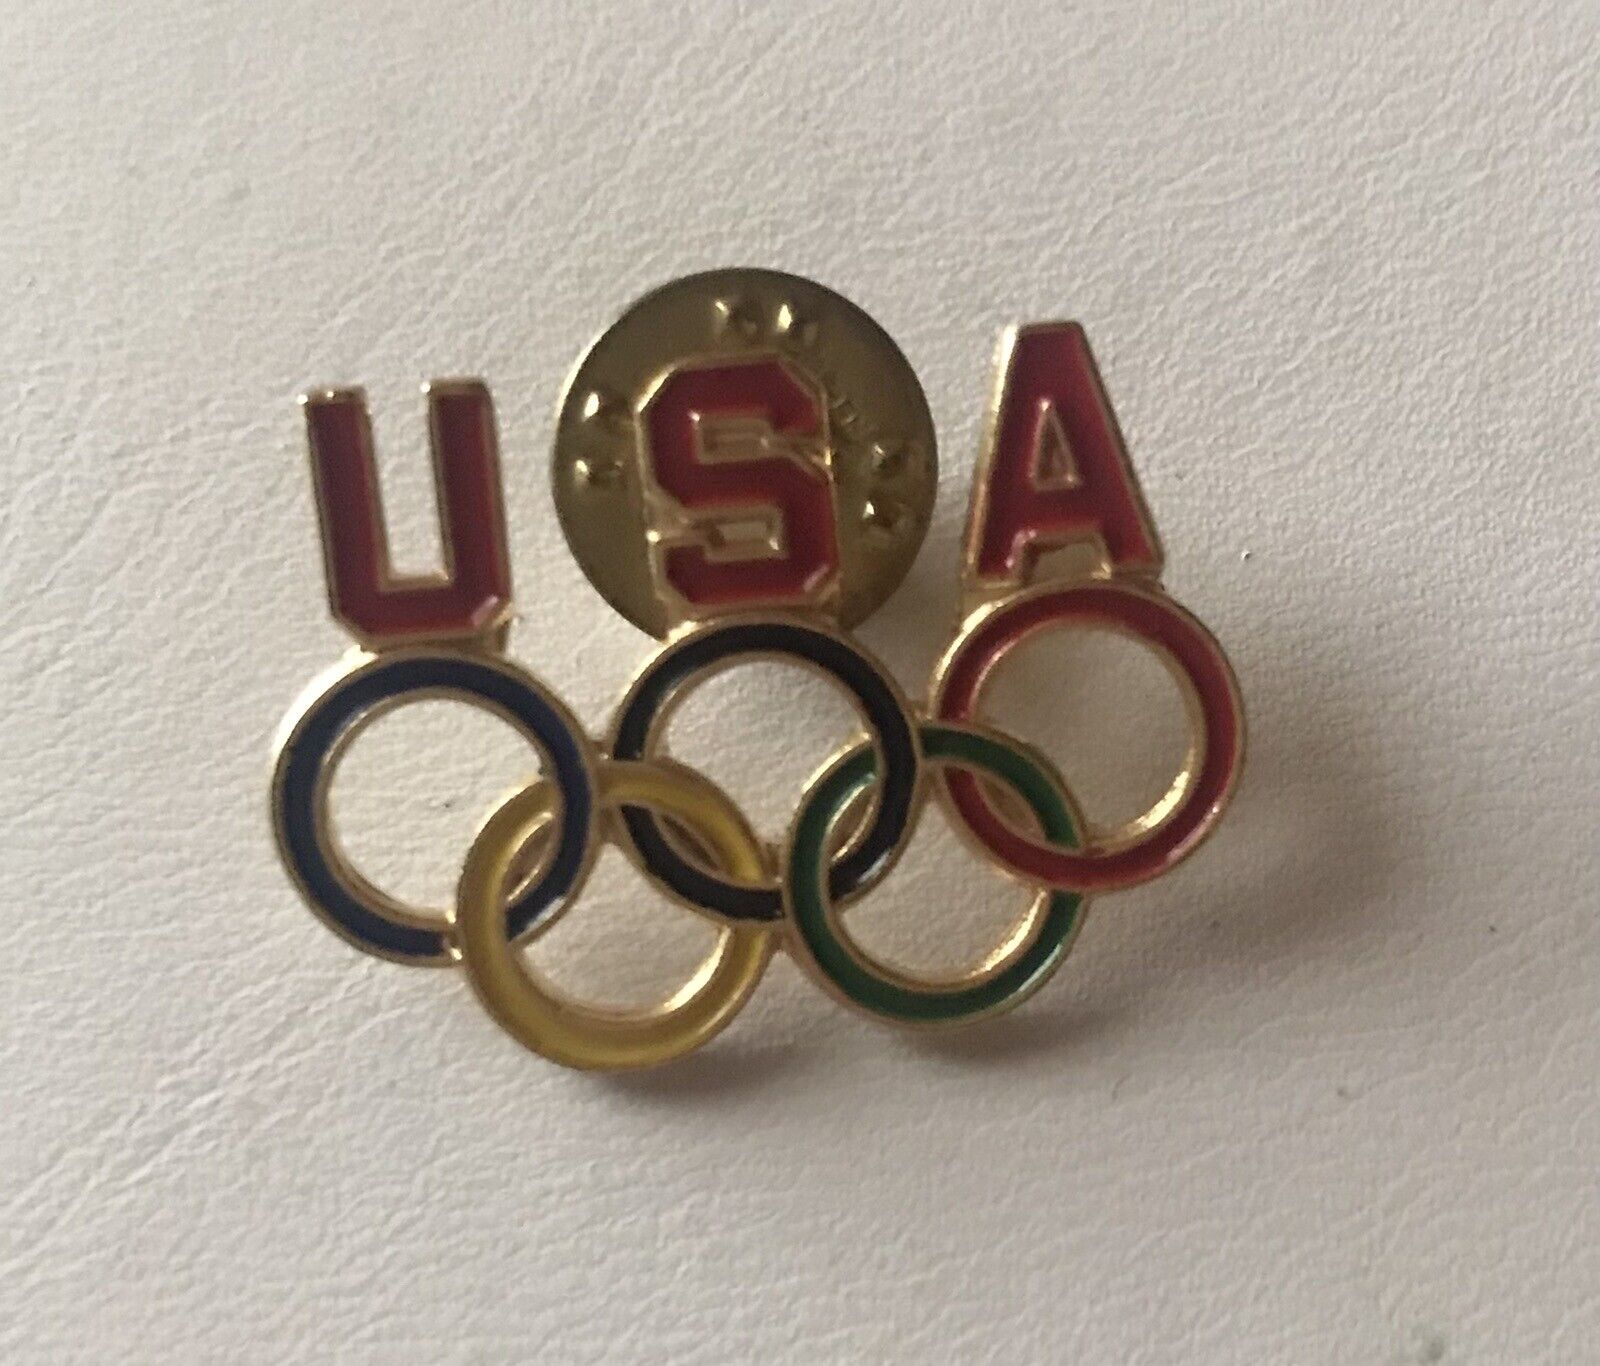 Vintage USA Olympics Pin